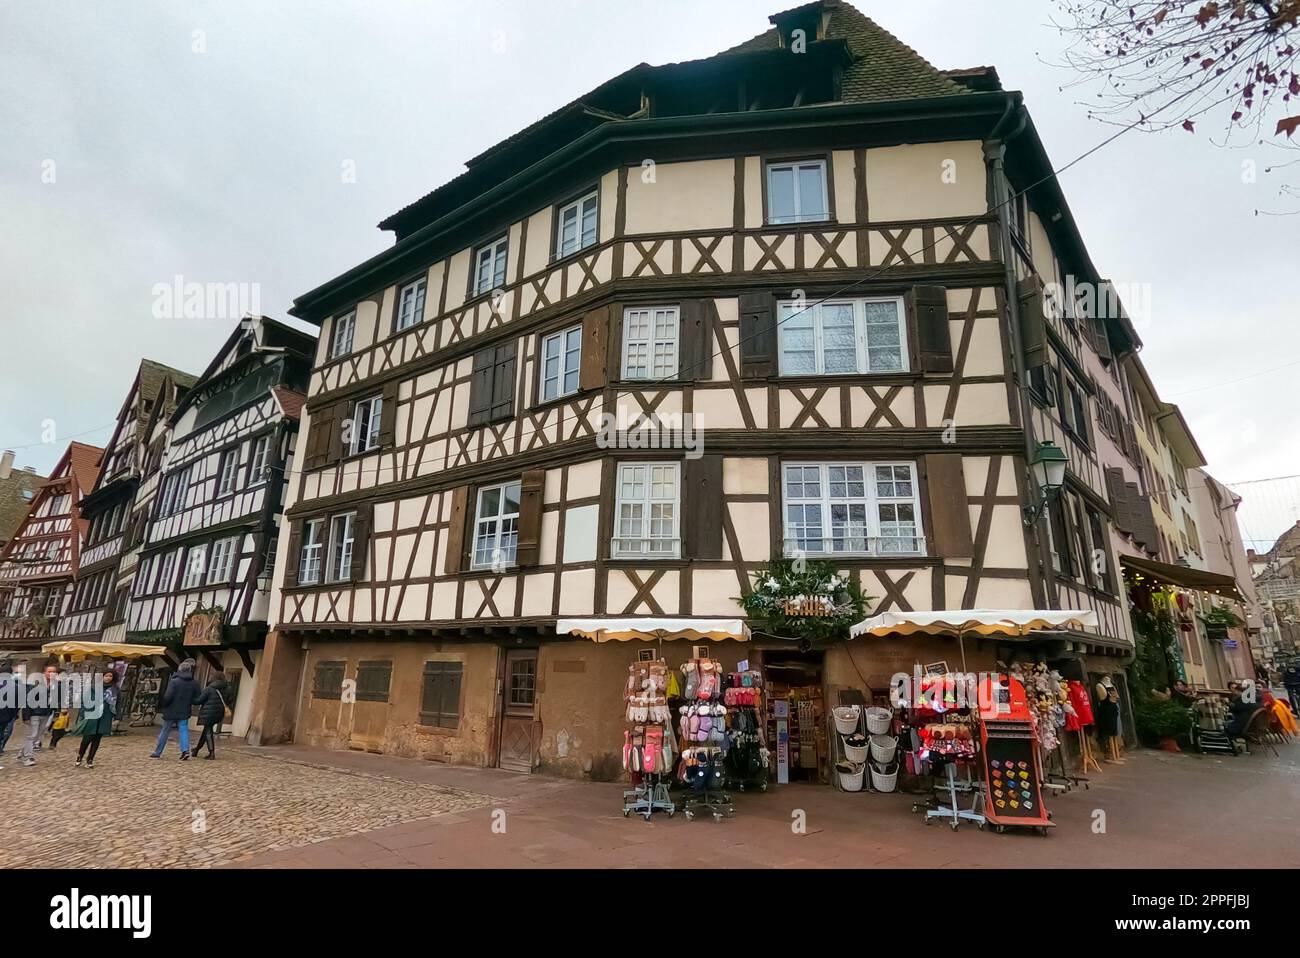 Rues et façades de maisons, décorées traditionnellement avec des jouets et des ours en peluche pour Noël dans la ville médiévale de Strasbourg - la capitale de Noël Banque D'Images